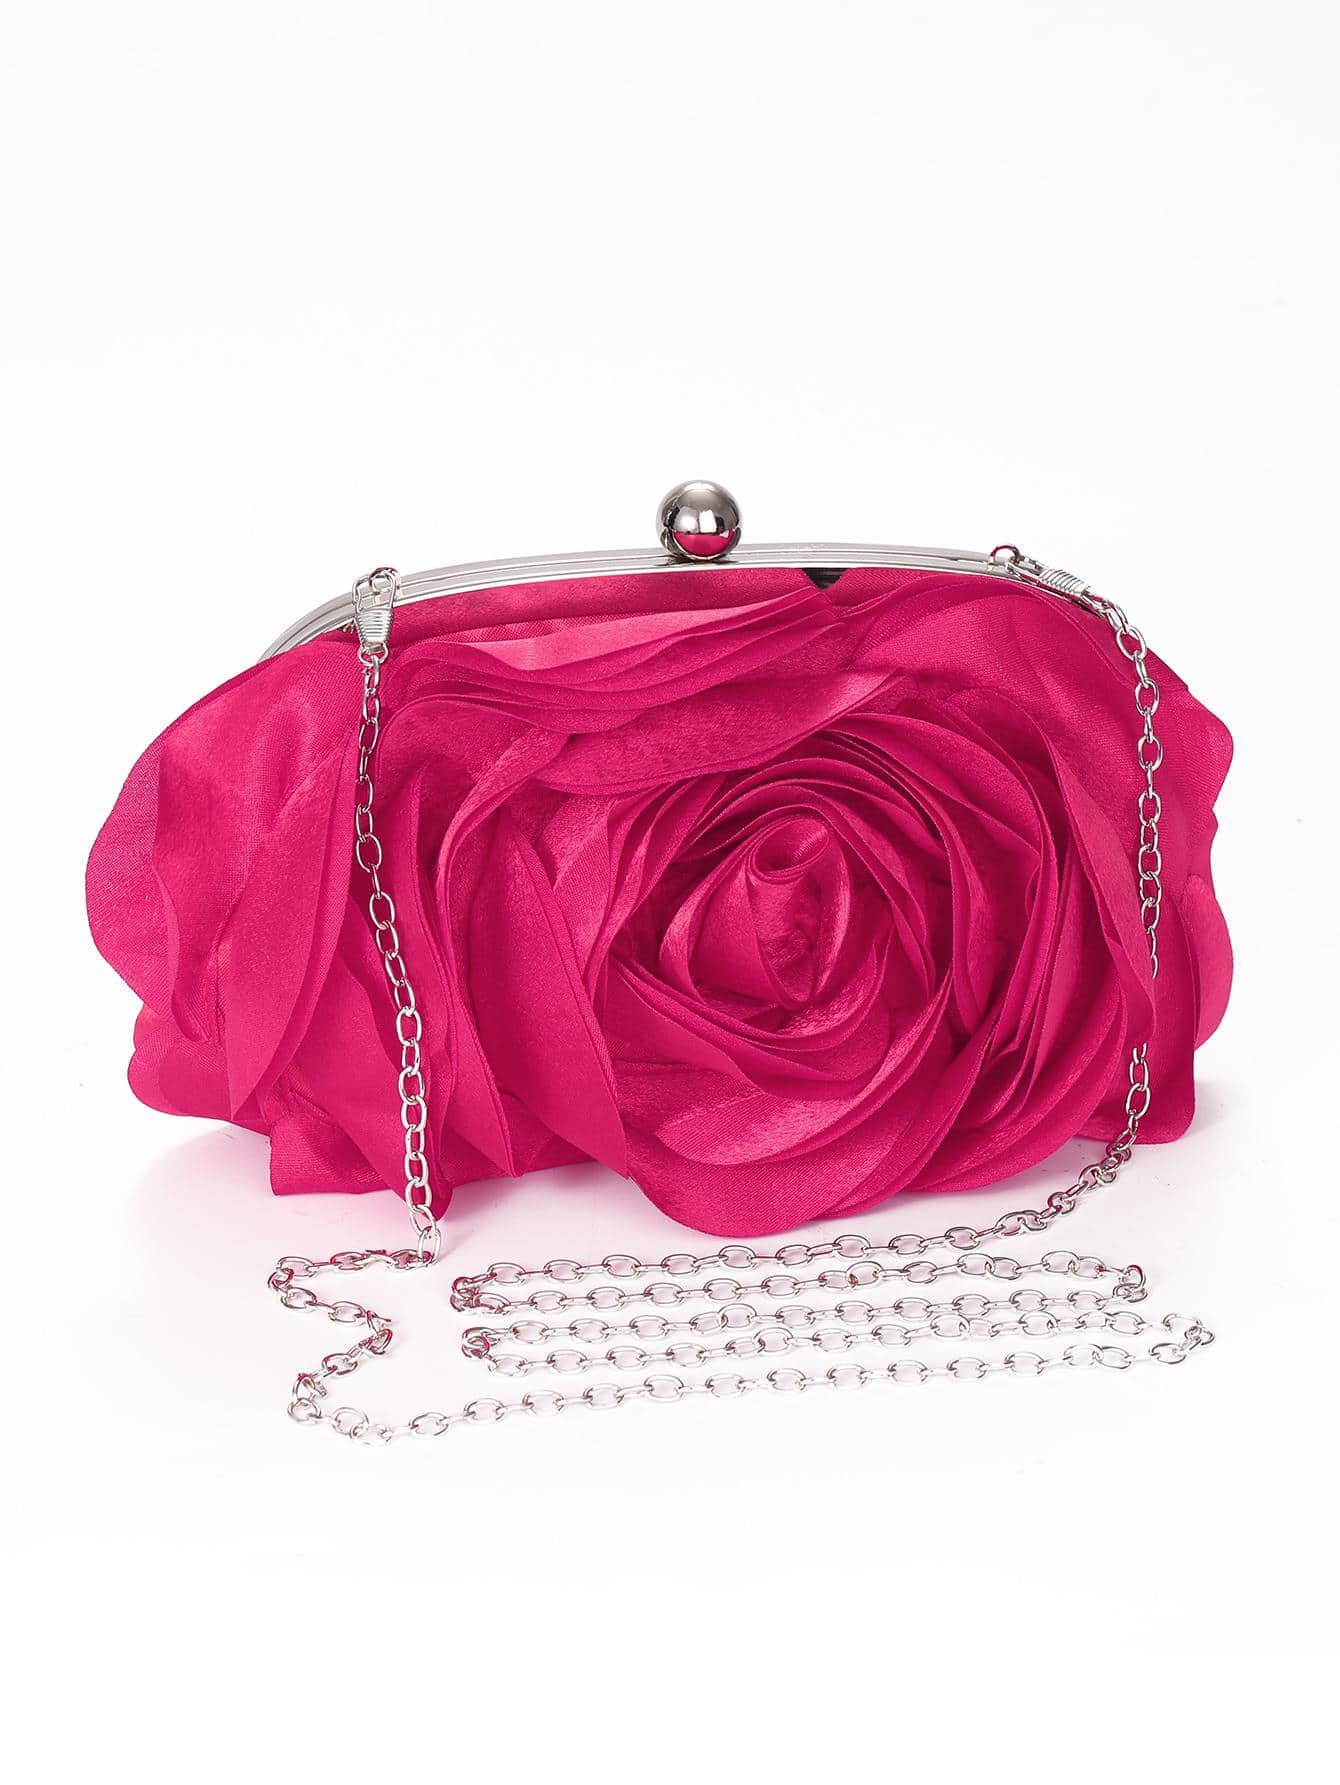 Вечерняя сумка с цветочным принтом, ярко-розовый фото